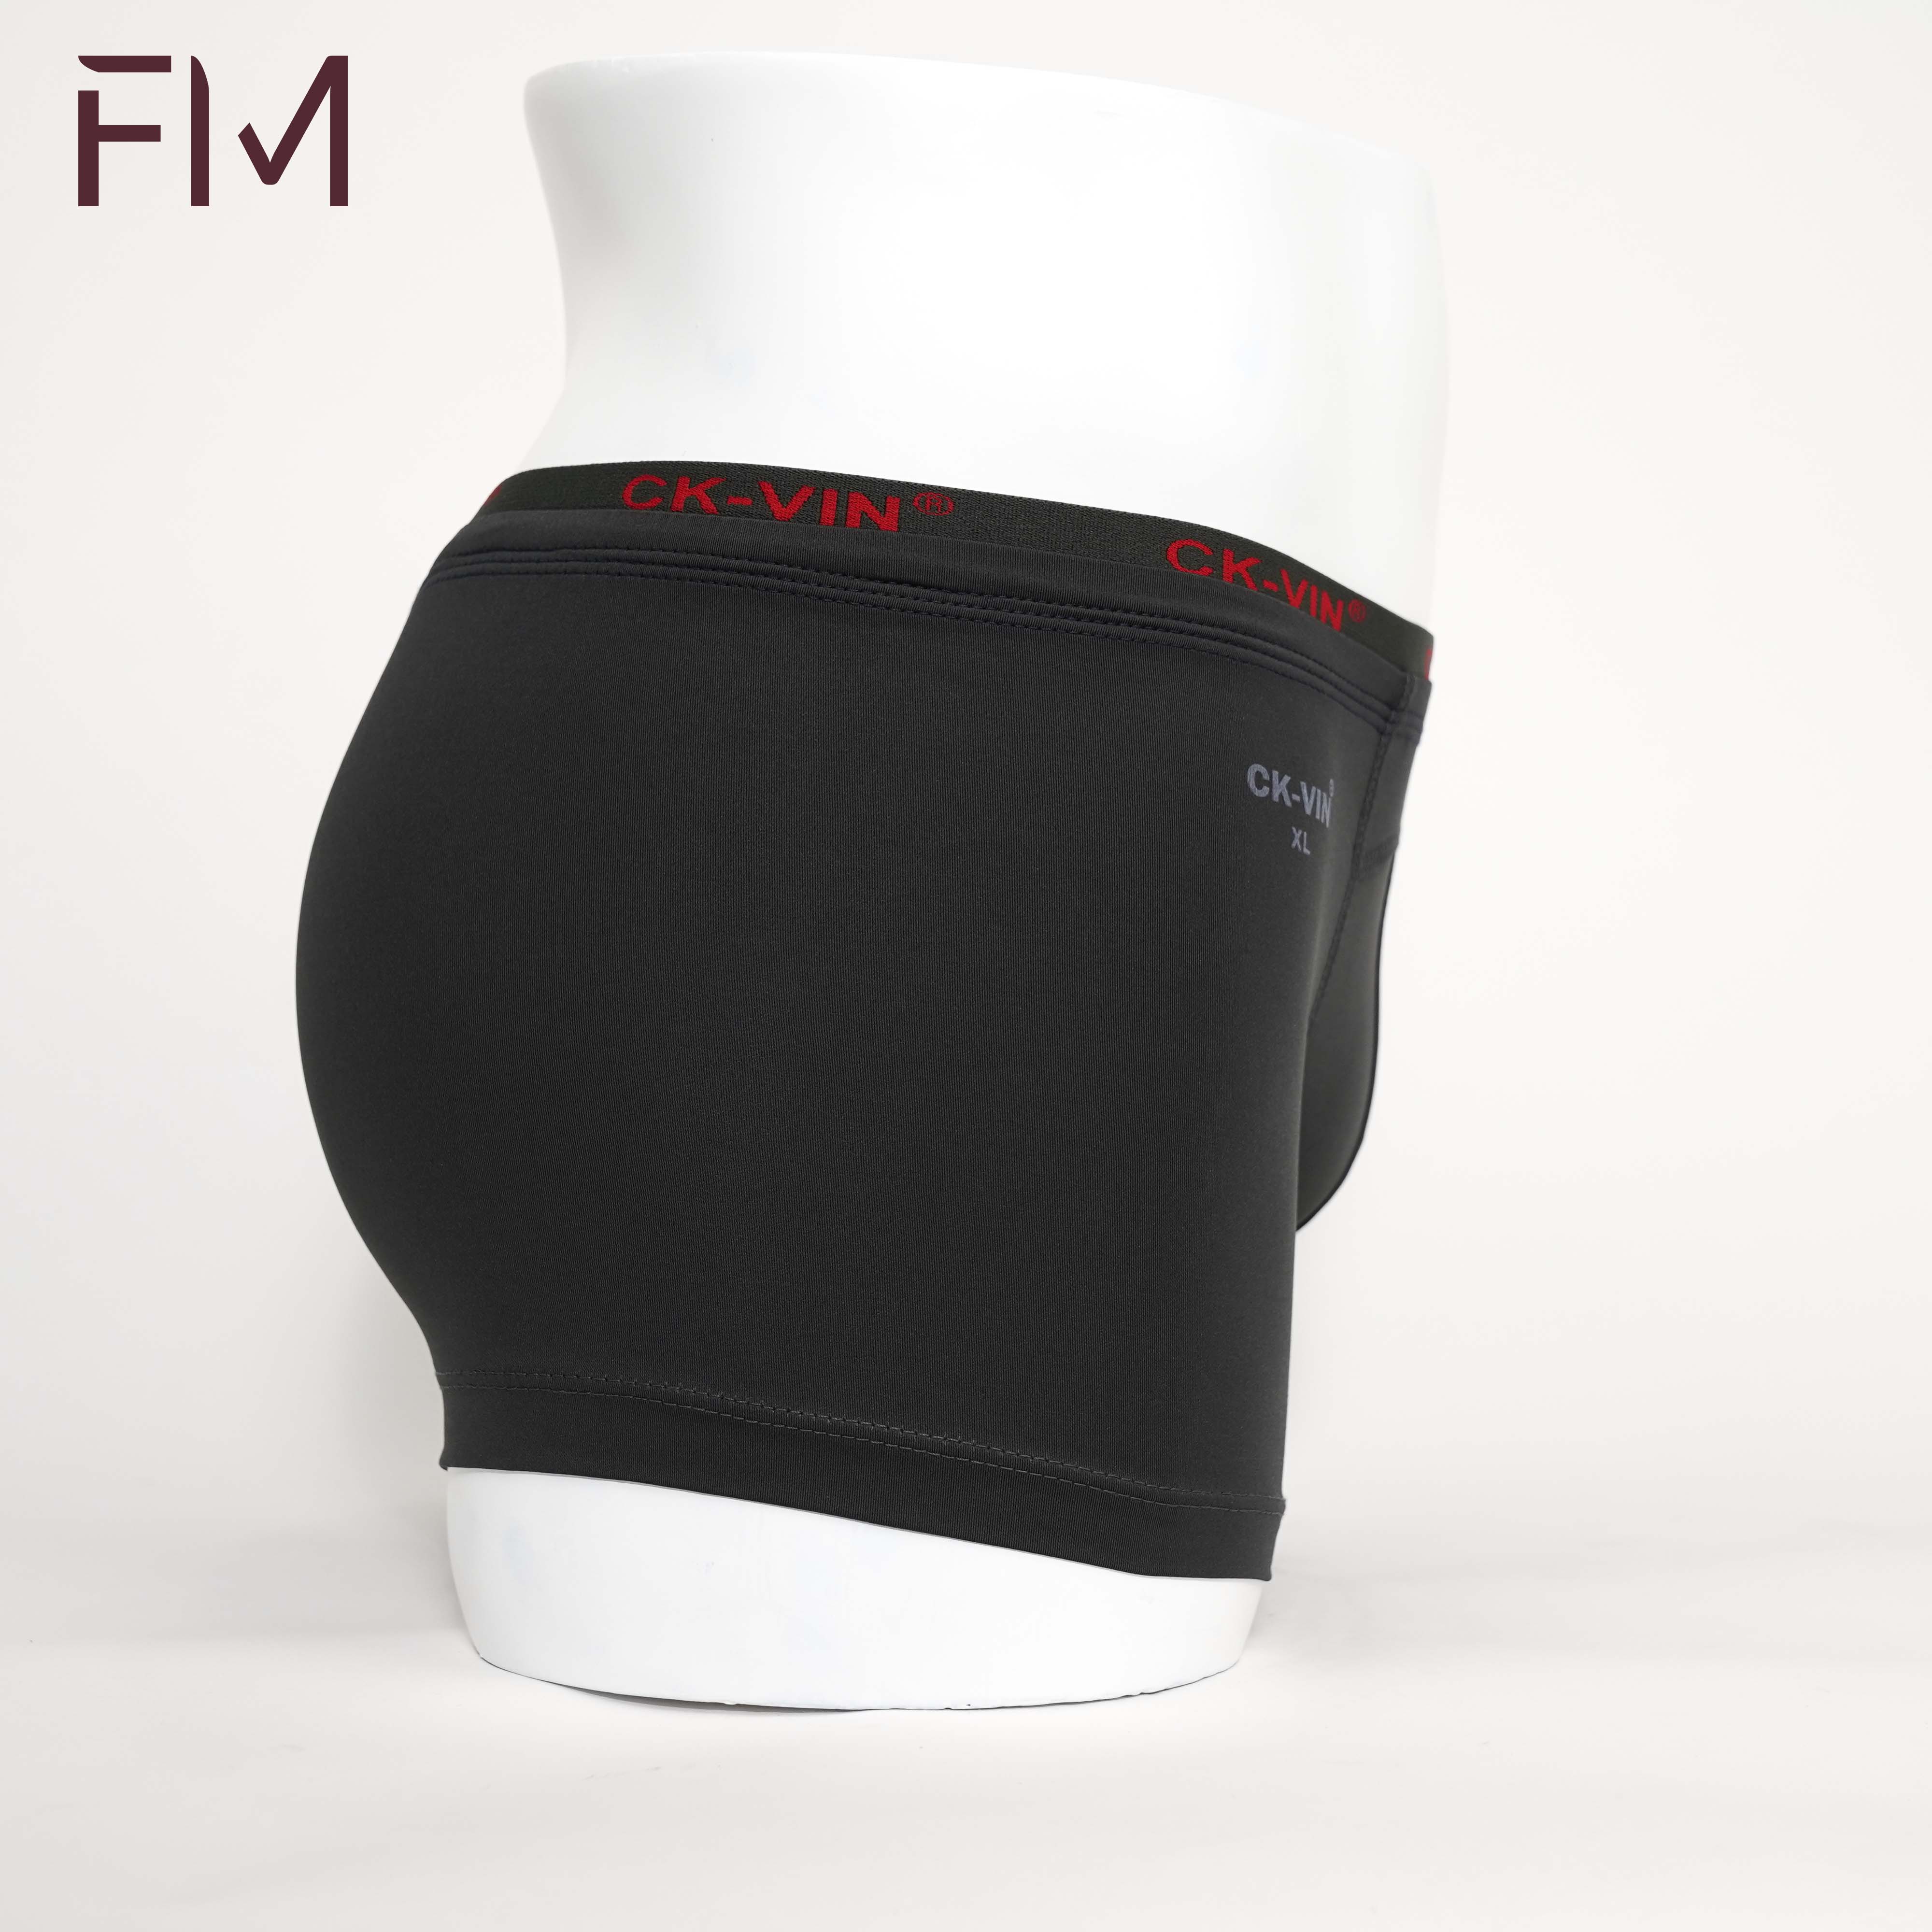 Combo 5 quần lót boxer nam, thun cotton lạnh cao cấp, lưng bản nhỏ thoải mái - FORMEN SHOP - FMPS226